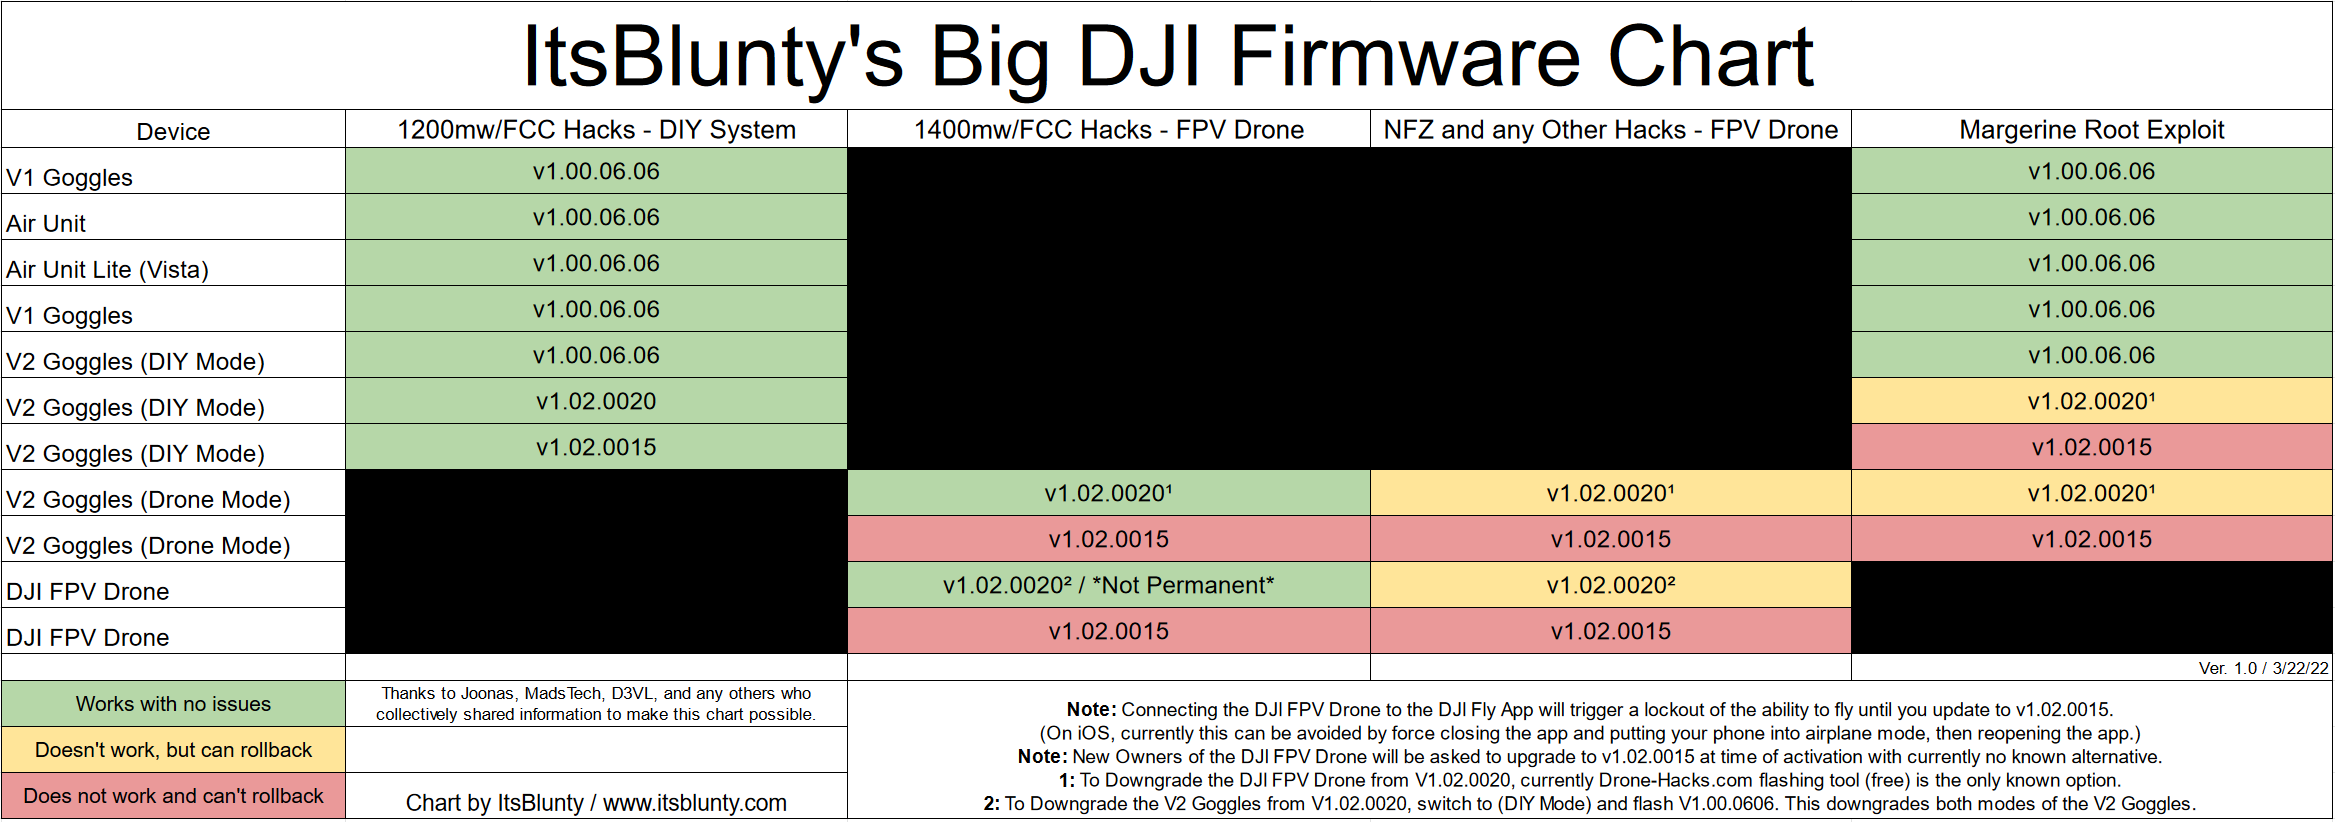 ItsBluntys DJI Firmware Chart